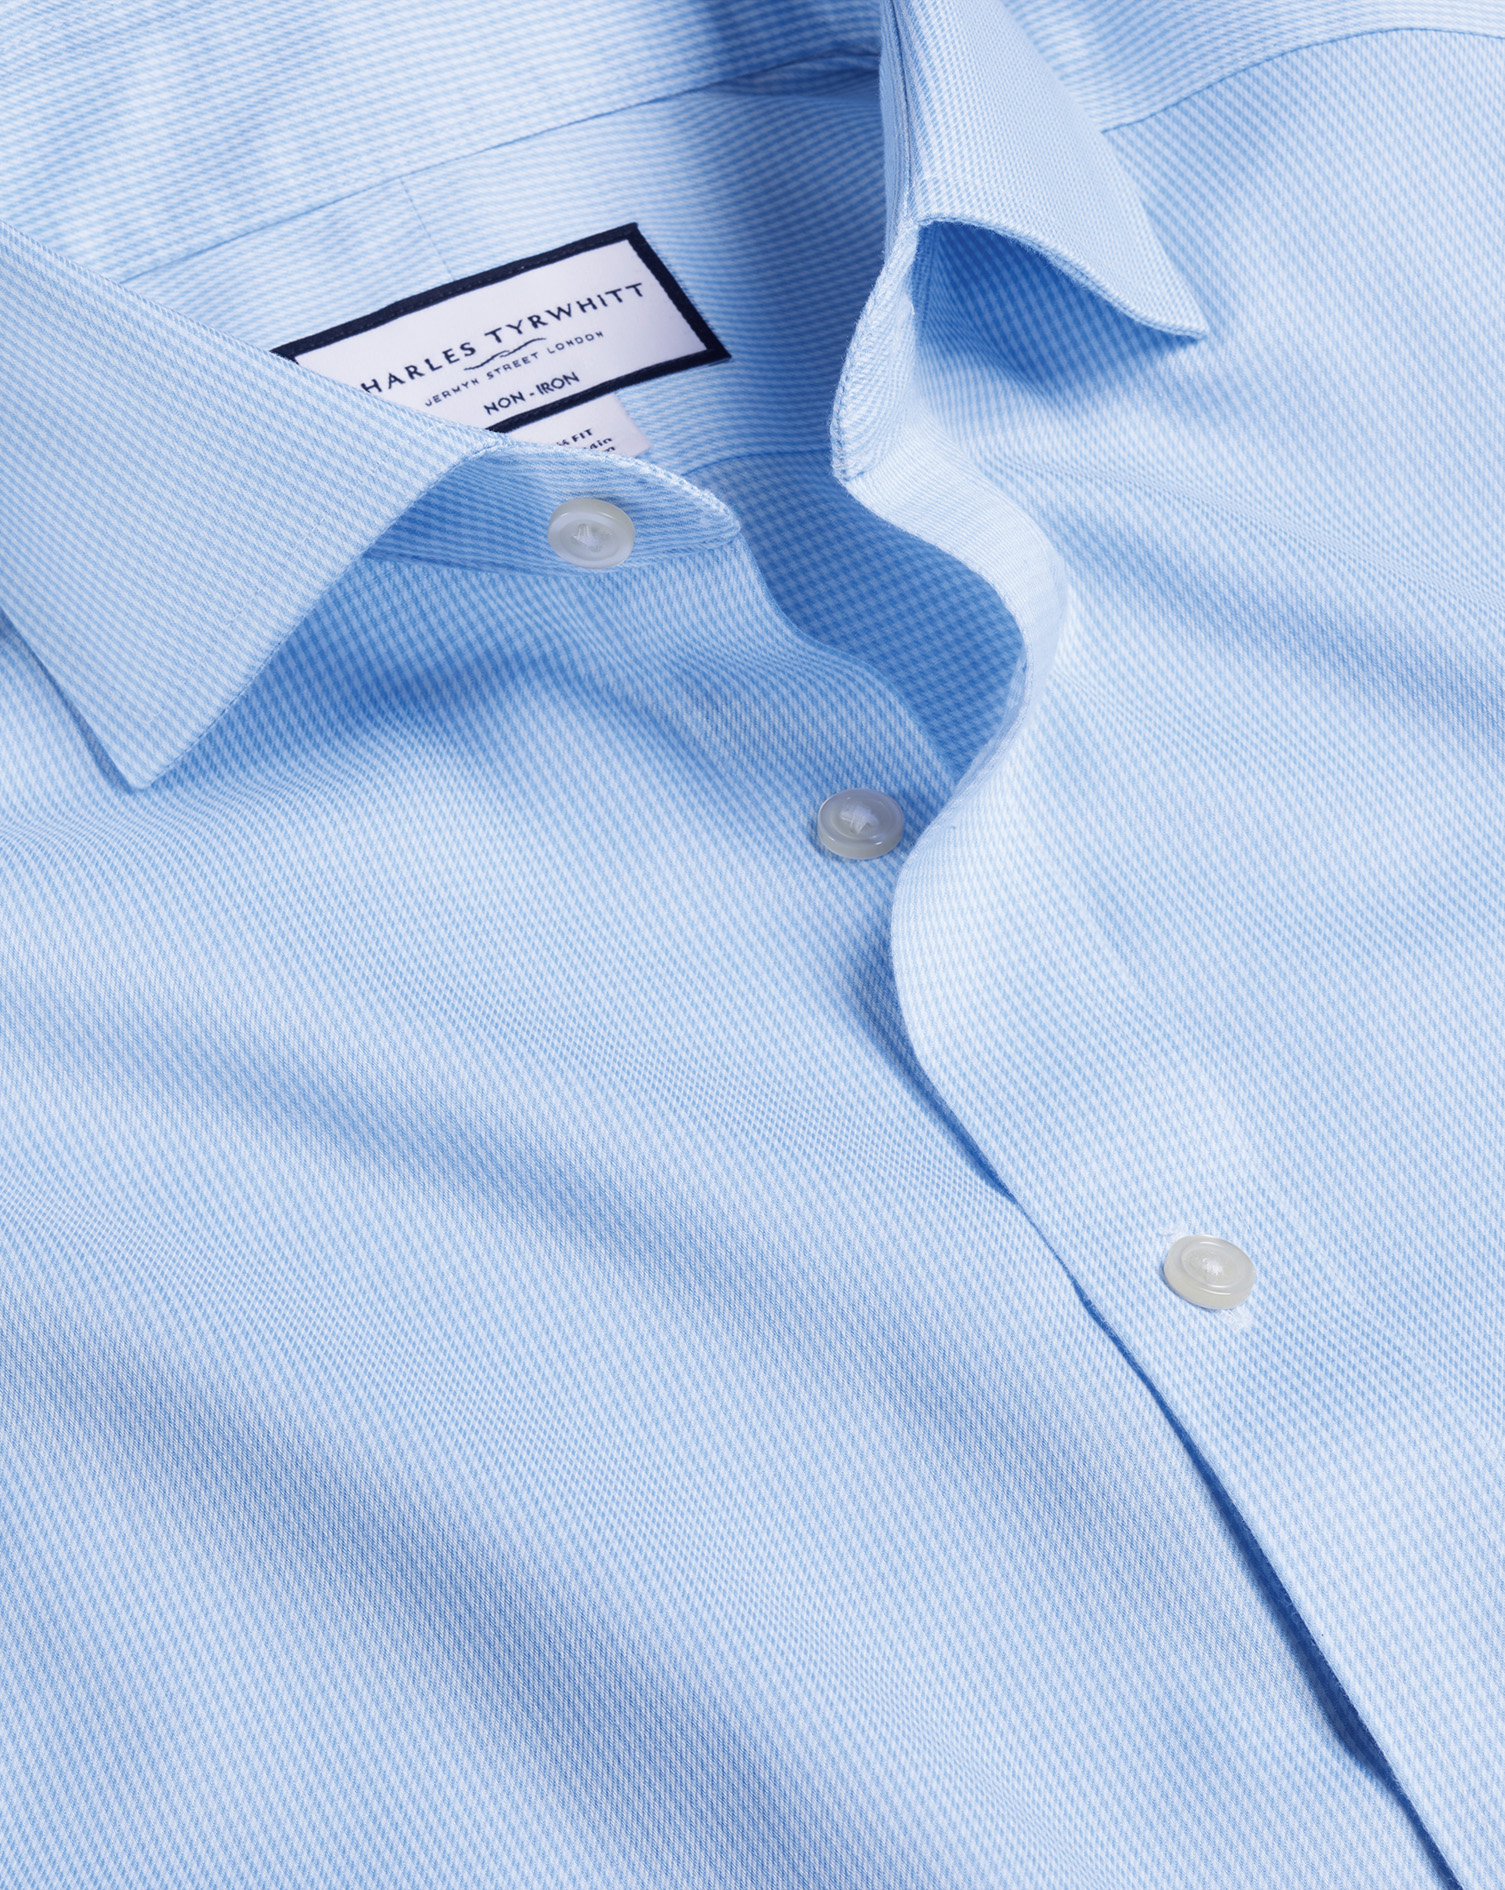 Men's Charles Tyrwhitt Cutaway Collar Non-Iron Puppytooth Dress Shirt - Sky Blue French Cuff Size XL